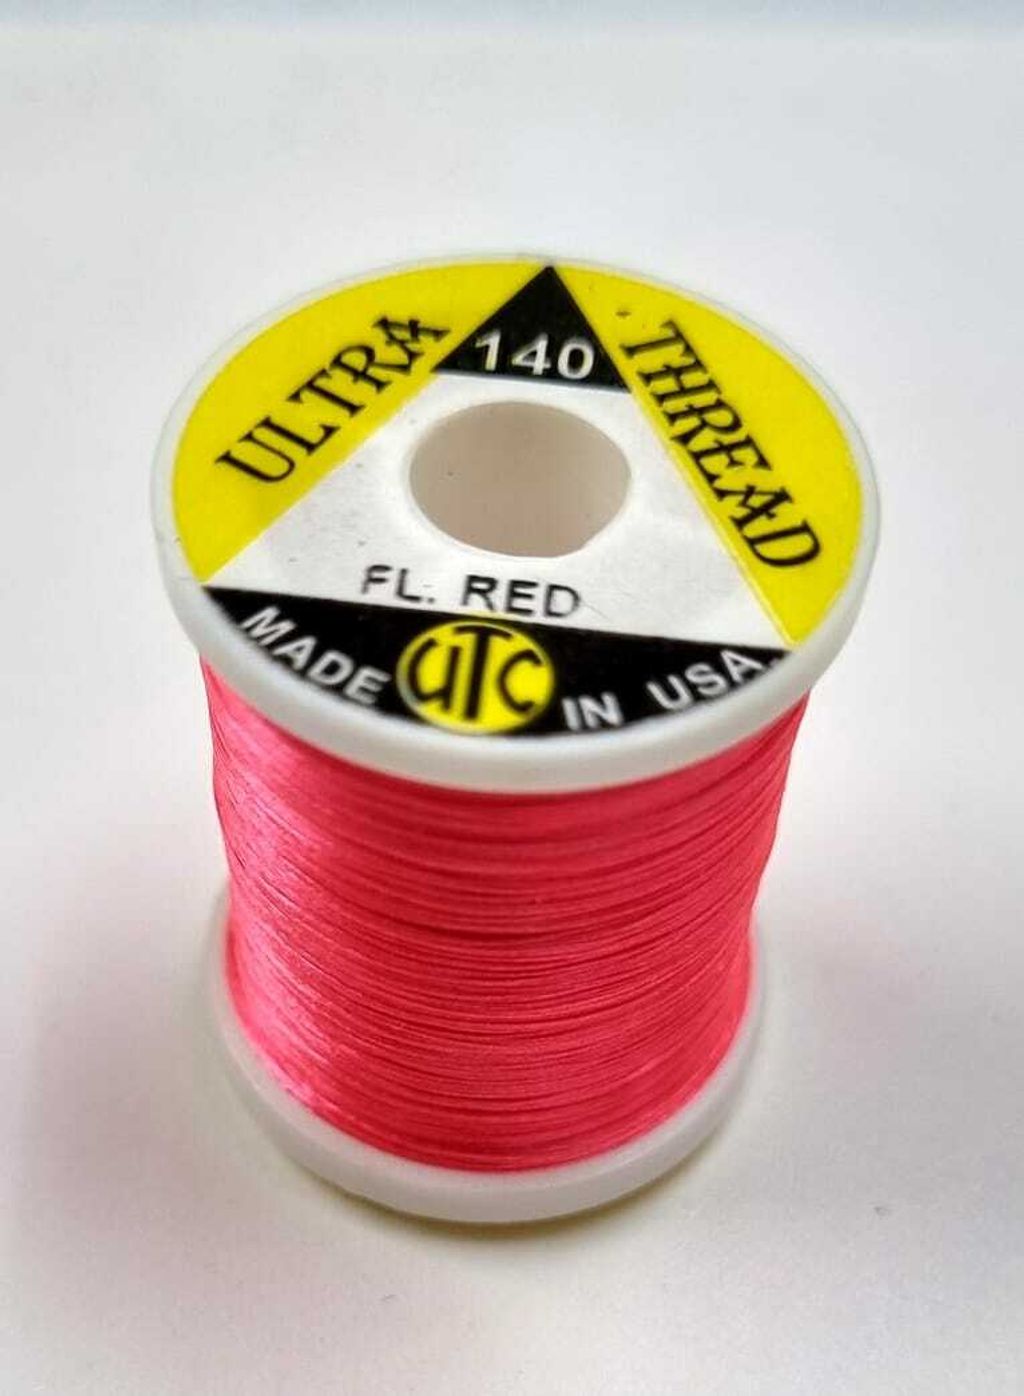 Wapsi Ultra Thread 140 Fl Red